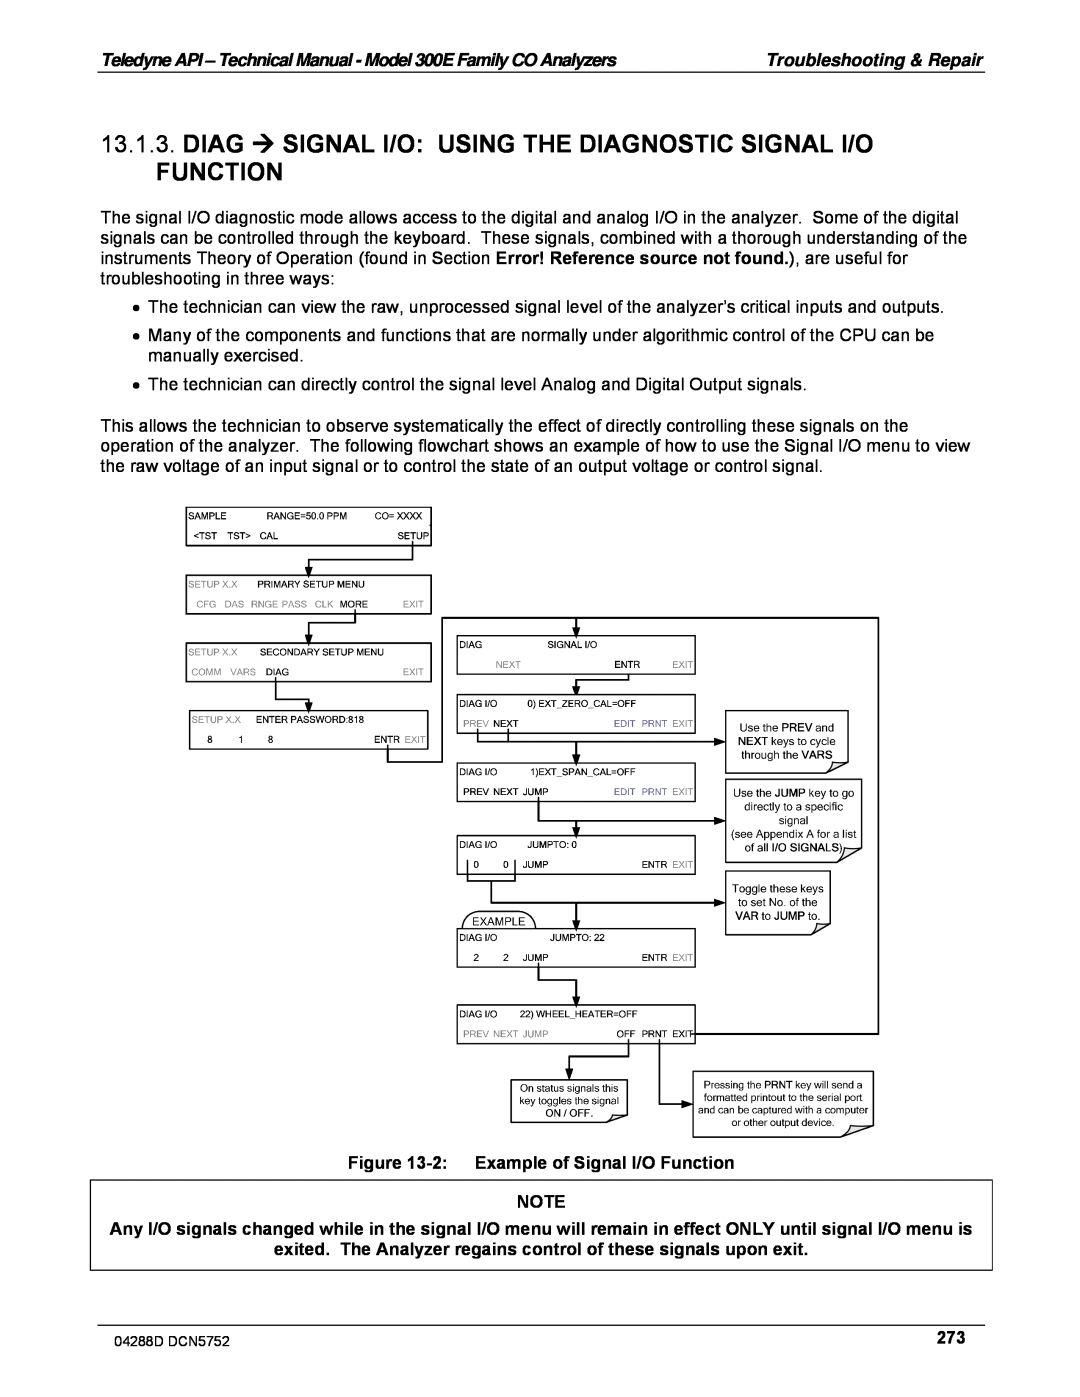 Teledyne M300EM operation manual 2:Example of Signal I/O Function 